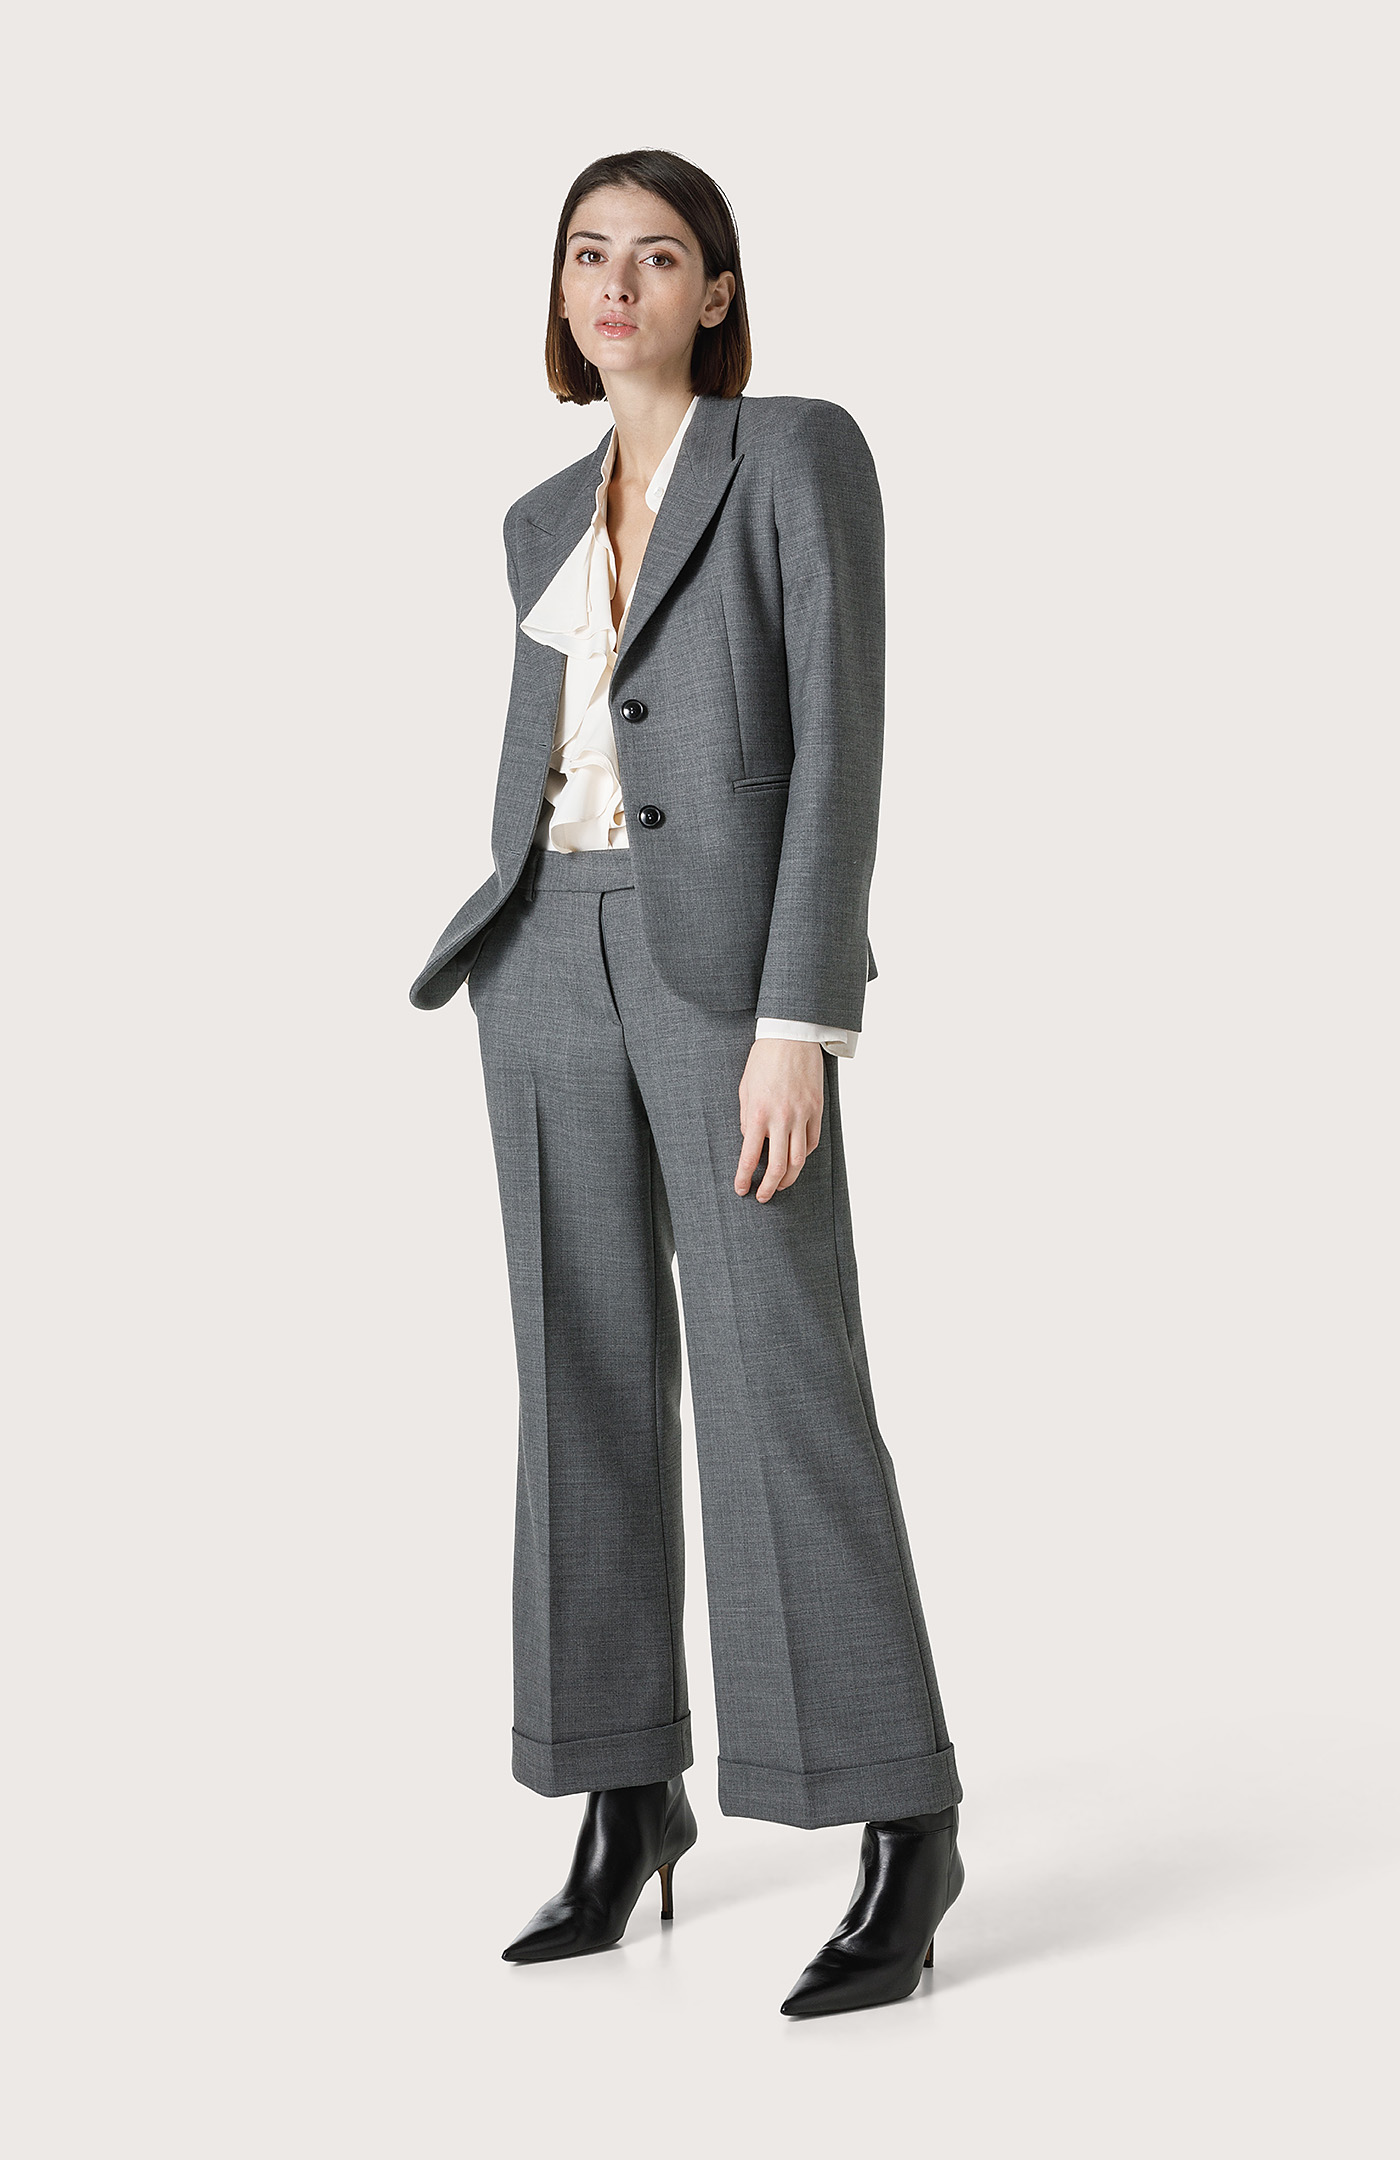 Ladies Autumn Winter Long Sleeved Suit Trousers Suit Elegant Suit Curvy  Flare Pants (Black, S) : Amazon.co.uk: Fashion